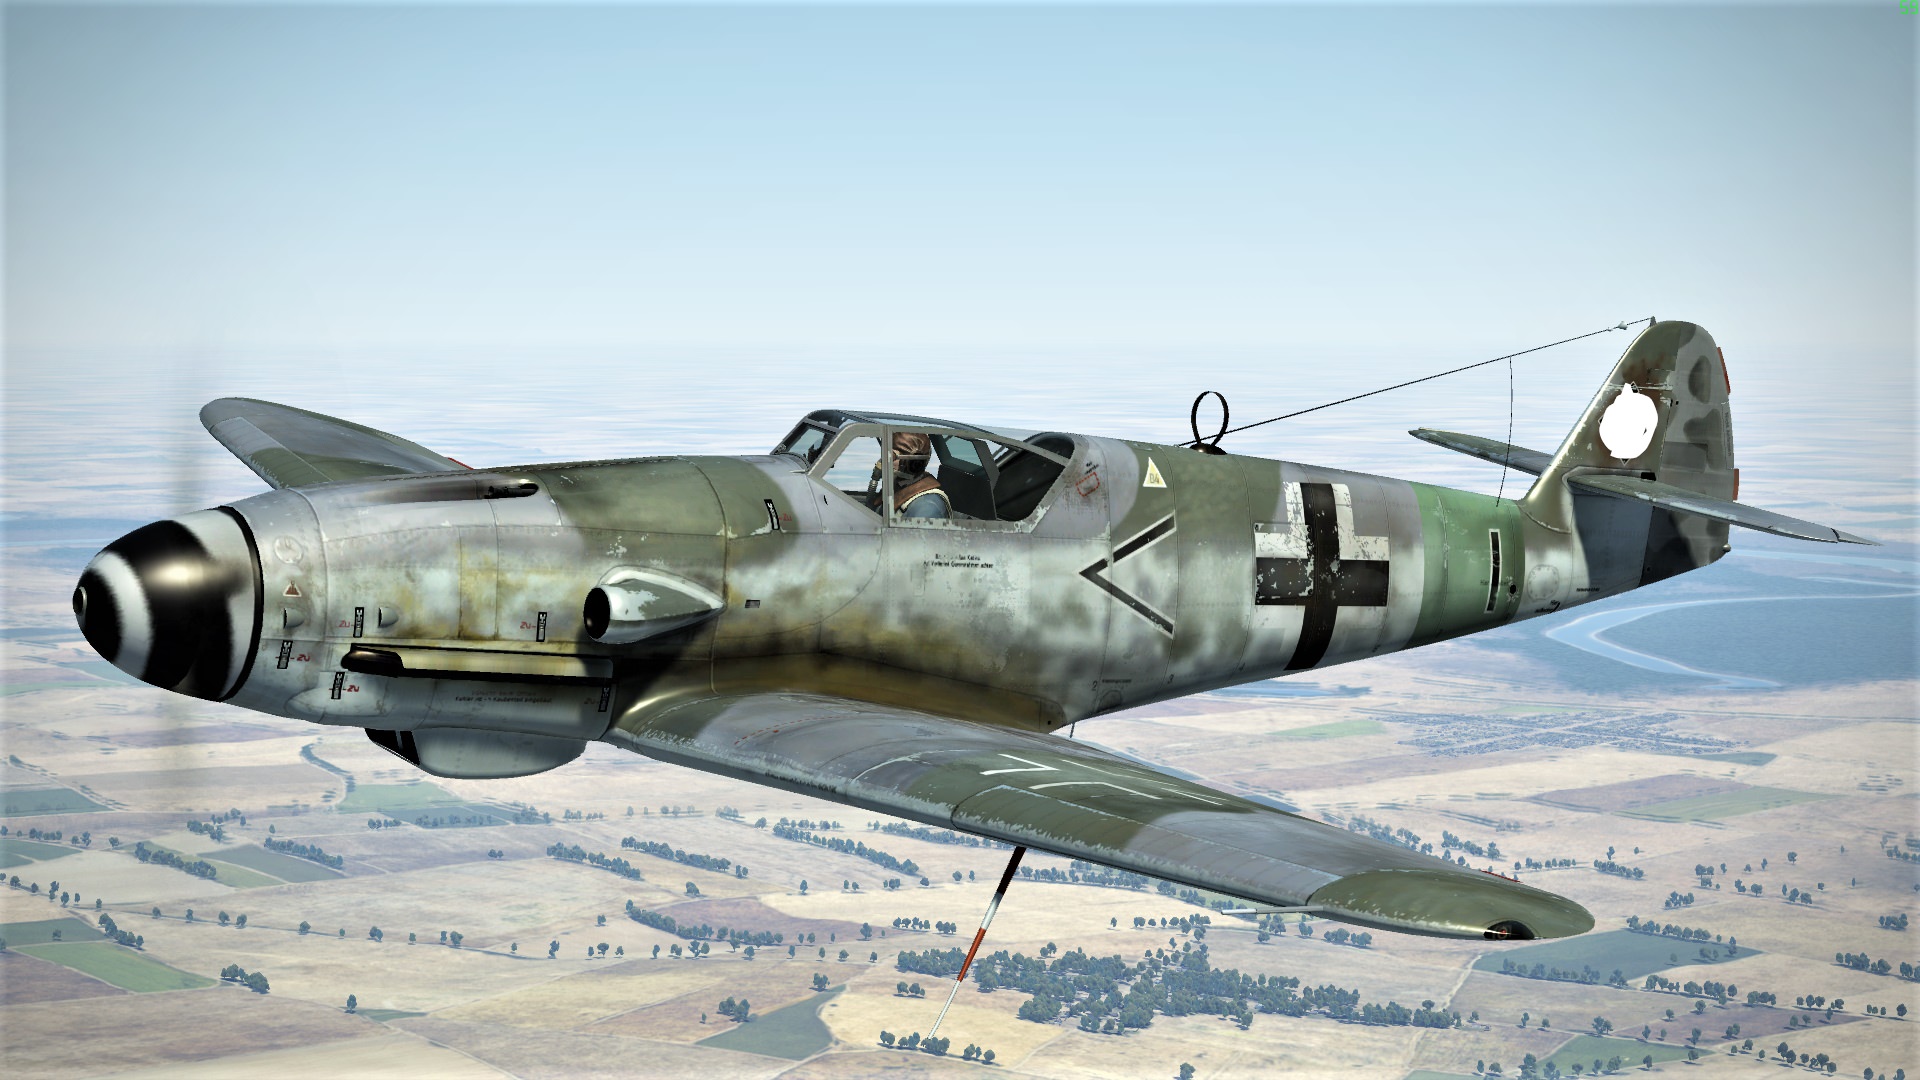 Rcoasbm - Messerschmitt Bf 109 K4 - 1920x1080 Wallpaper - teahub.io